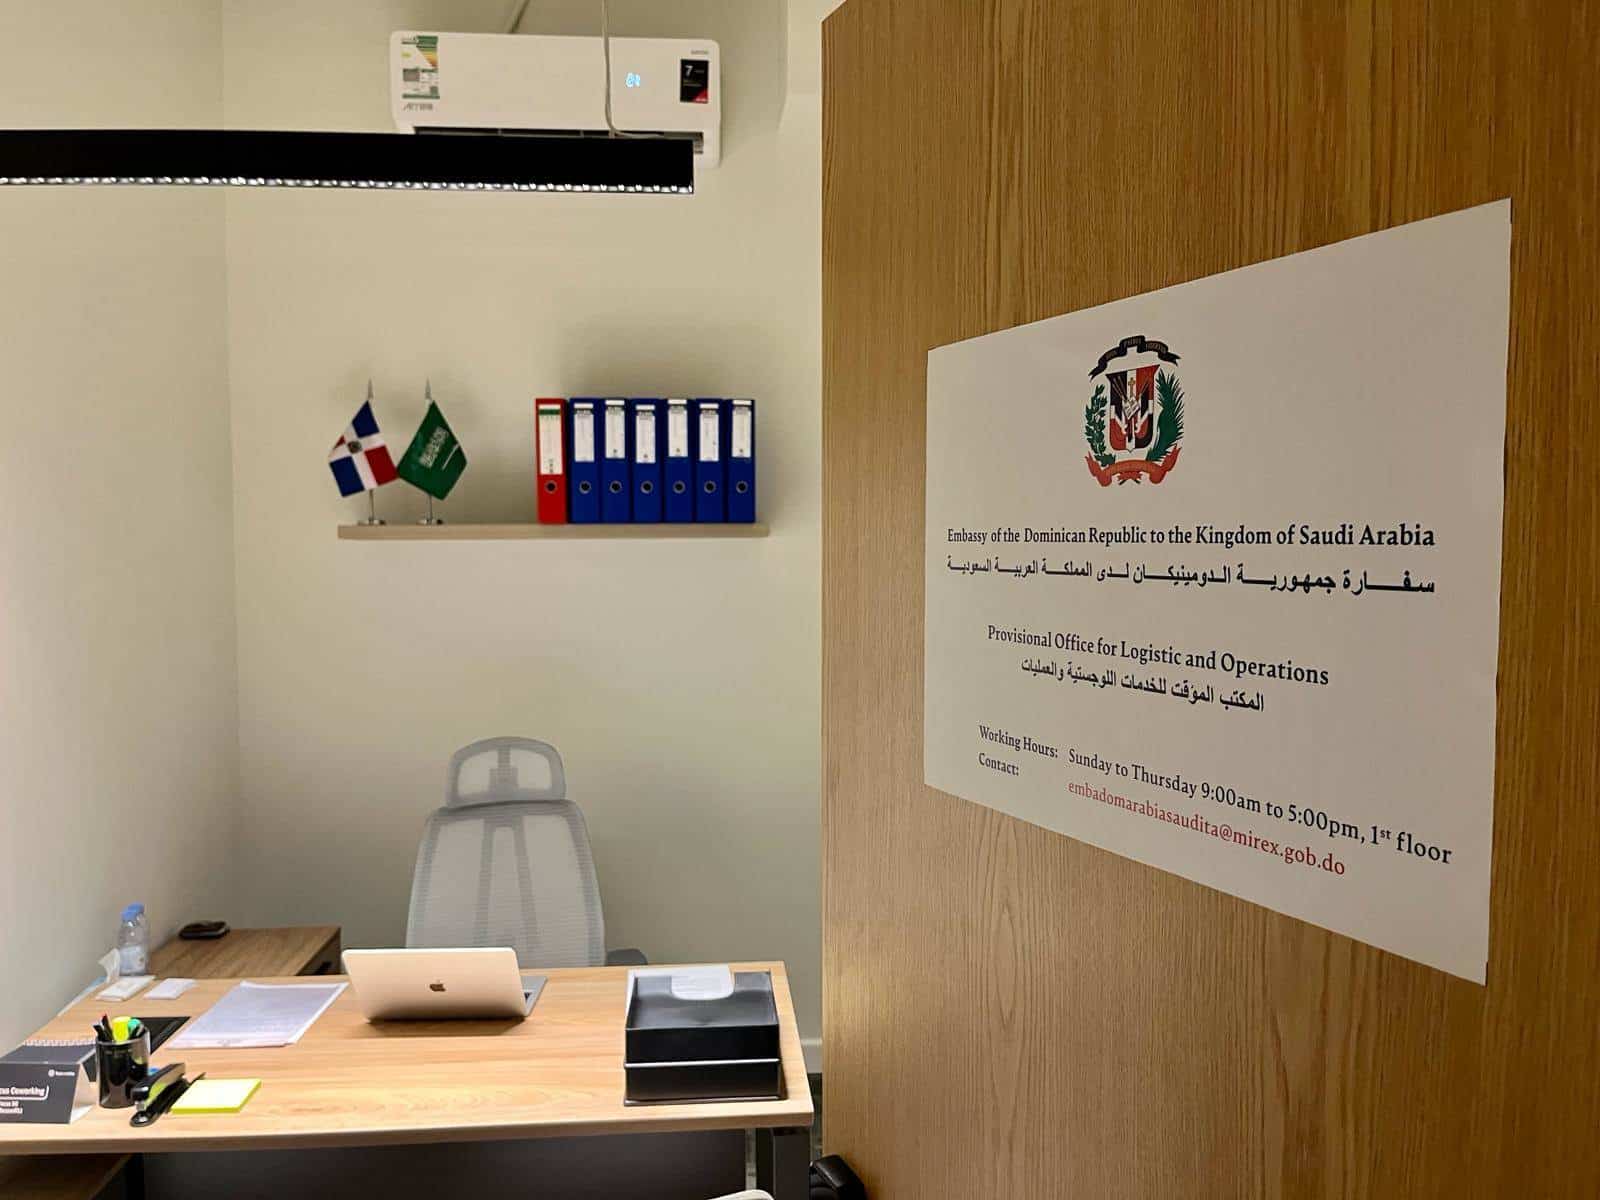 Inaugura oficina logística y operativa de la embajada dominicana en Arabia Saudita